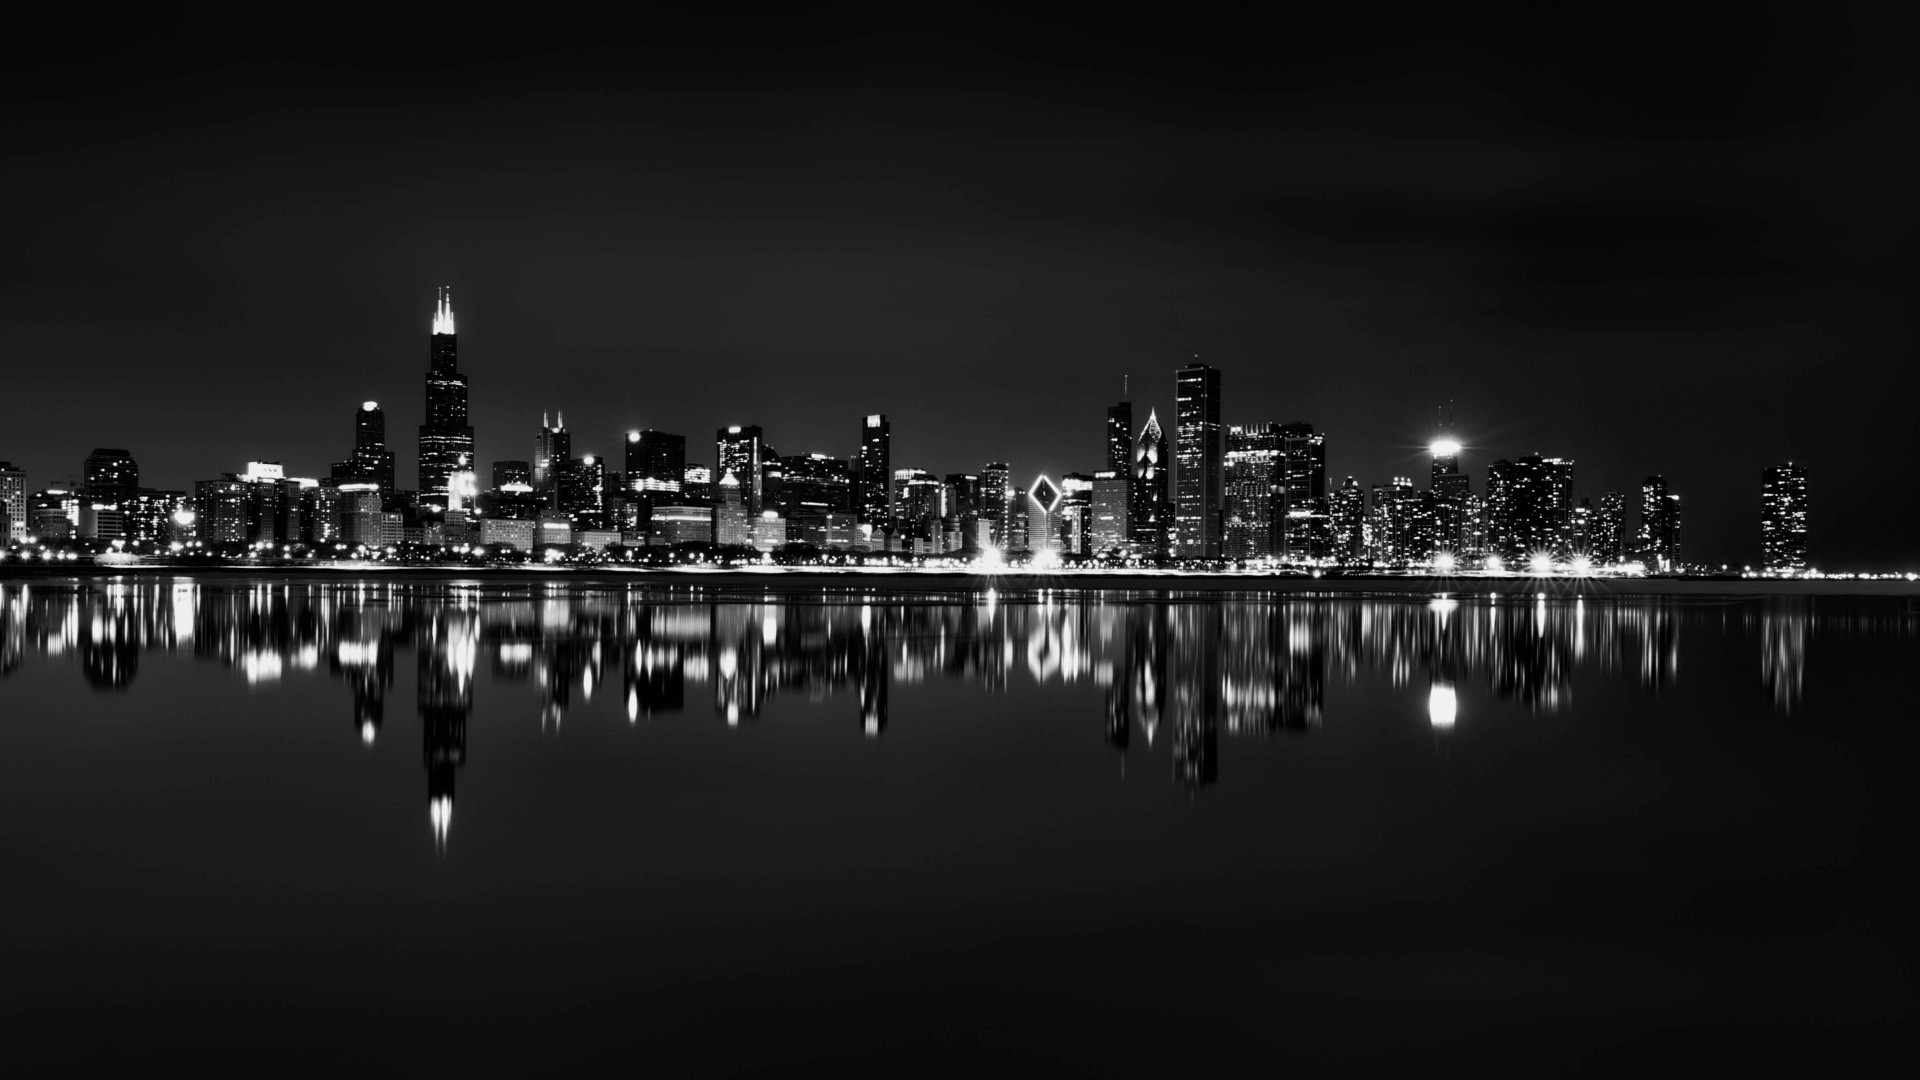 1920x1080 Chicago Skyline Backgrounds | 1920 x 1080 ...